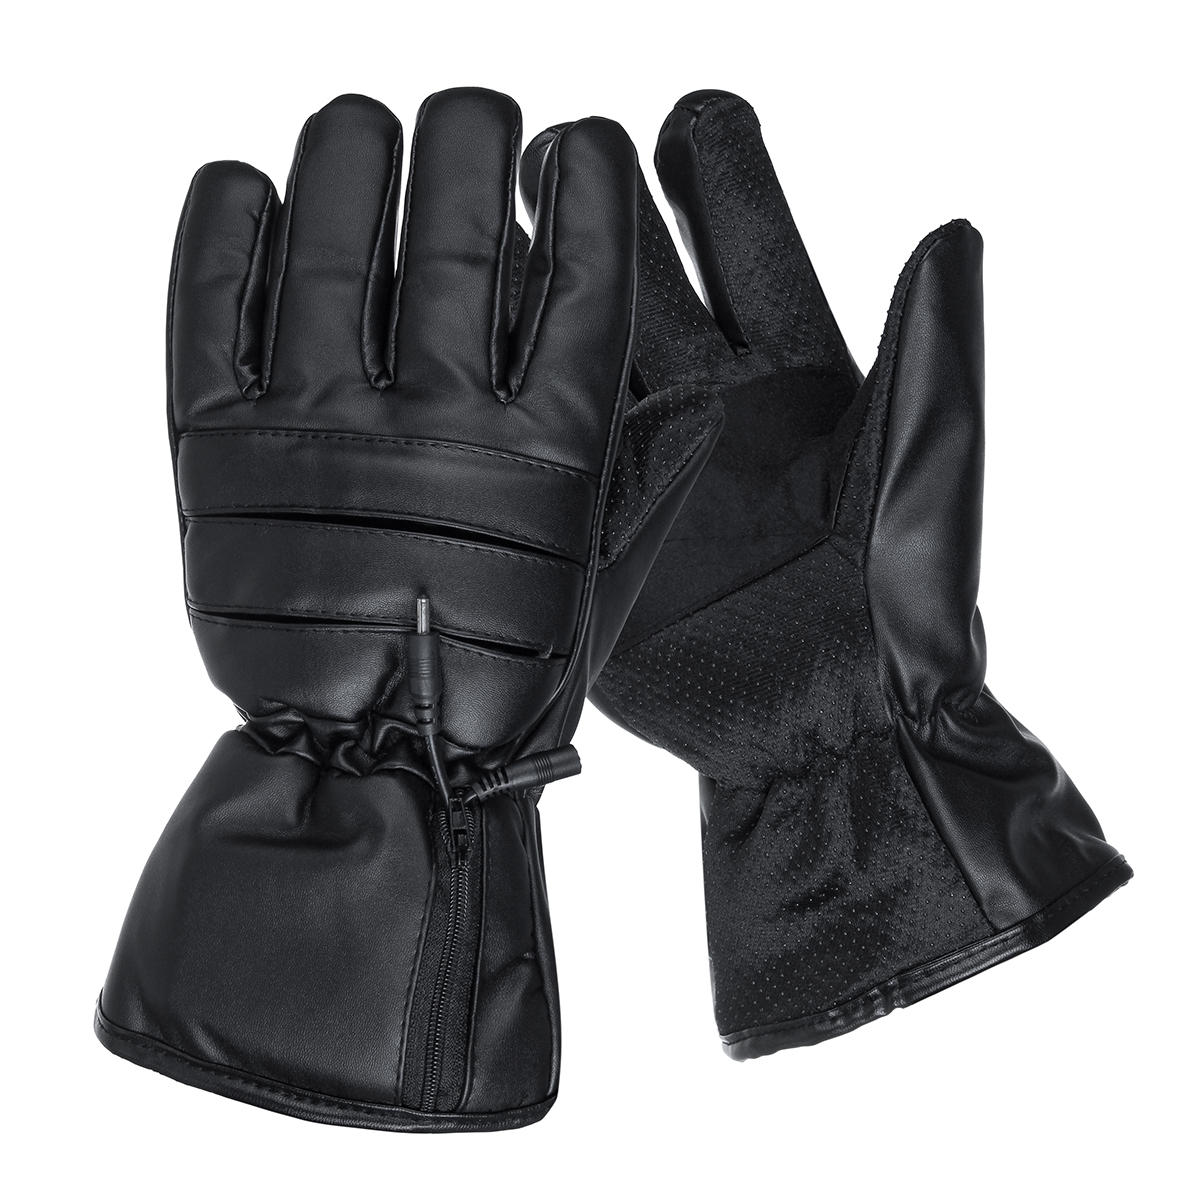 Oplaadbare elektrische verwarmde handschoenen Winter warme handschoenen Outdoor Fitness sporthandschoenen